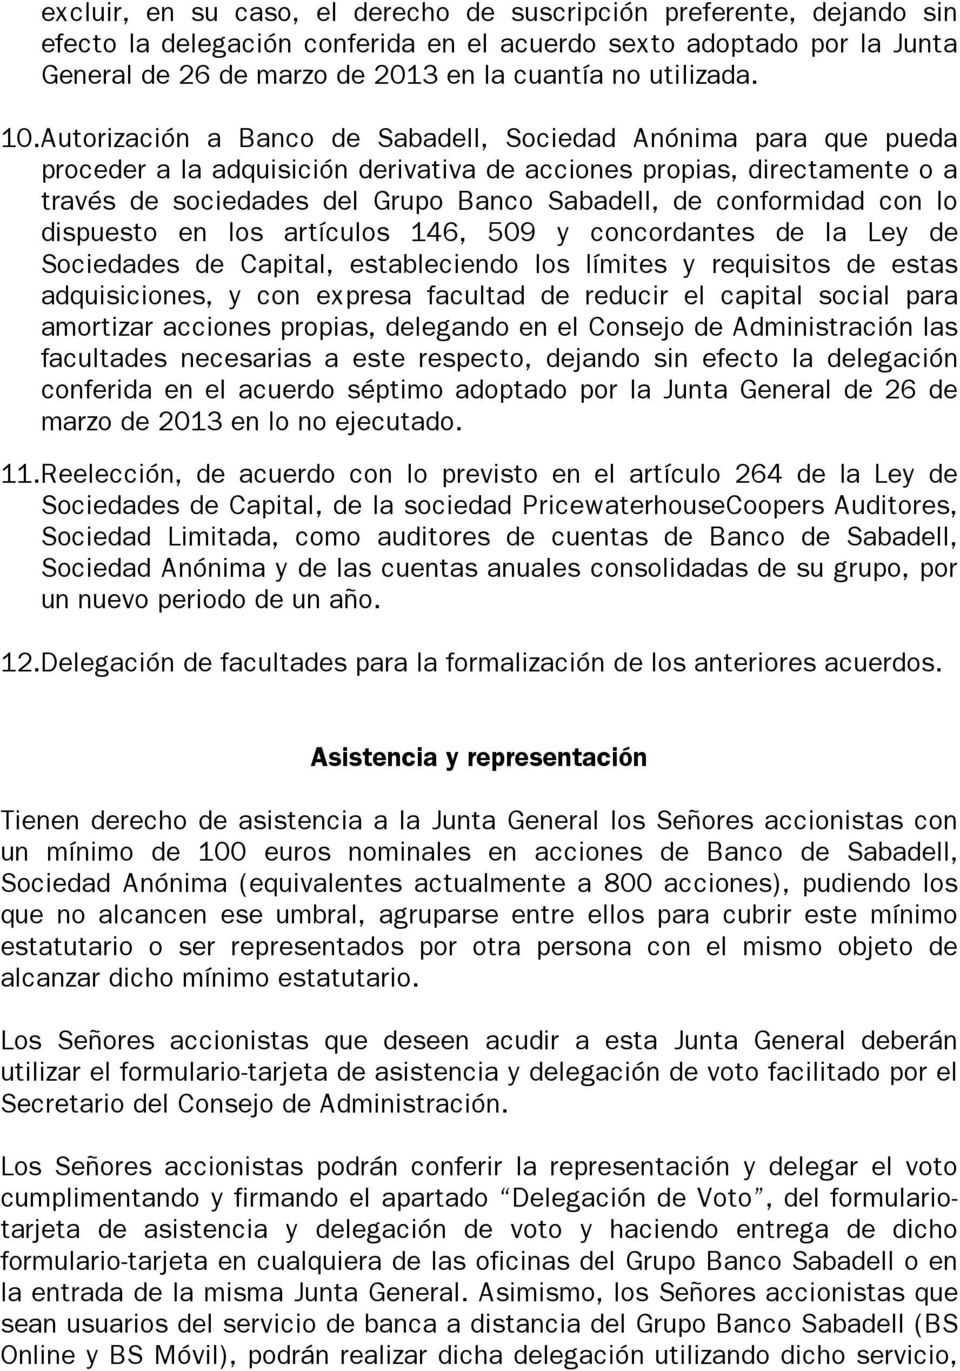 Autorización a Banco de Sabadell, Sociedad Anónima para que pueda proceder a la adquisición derivativa de acciones propias, directamente o a través de sociedades del Grupo Banco Sabadell, de